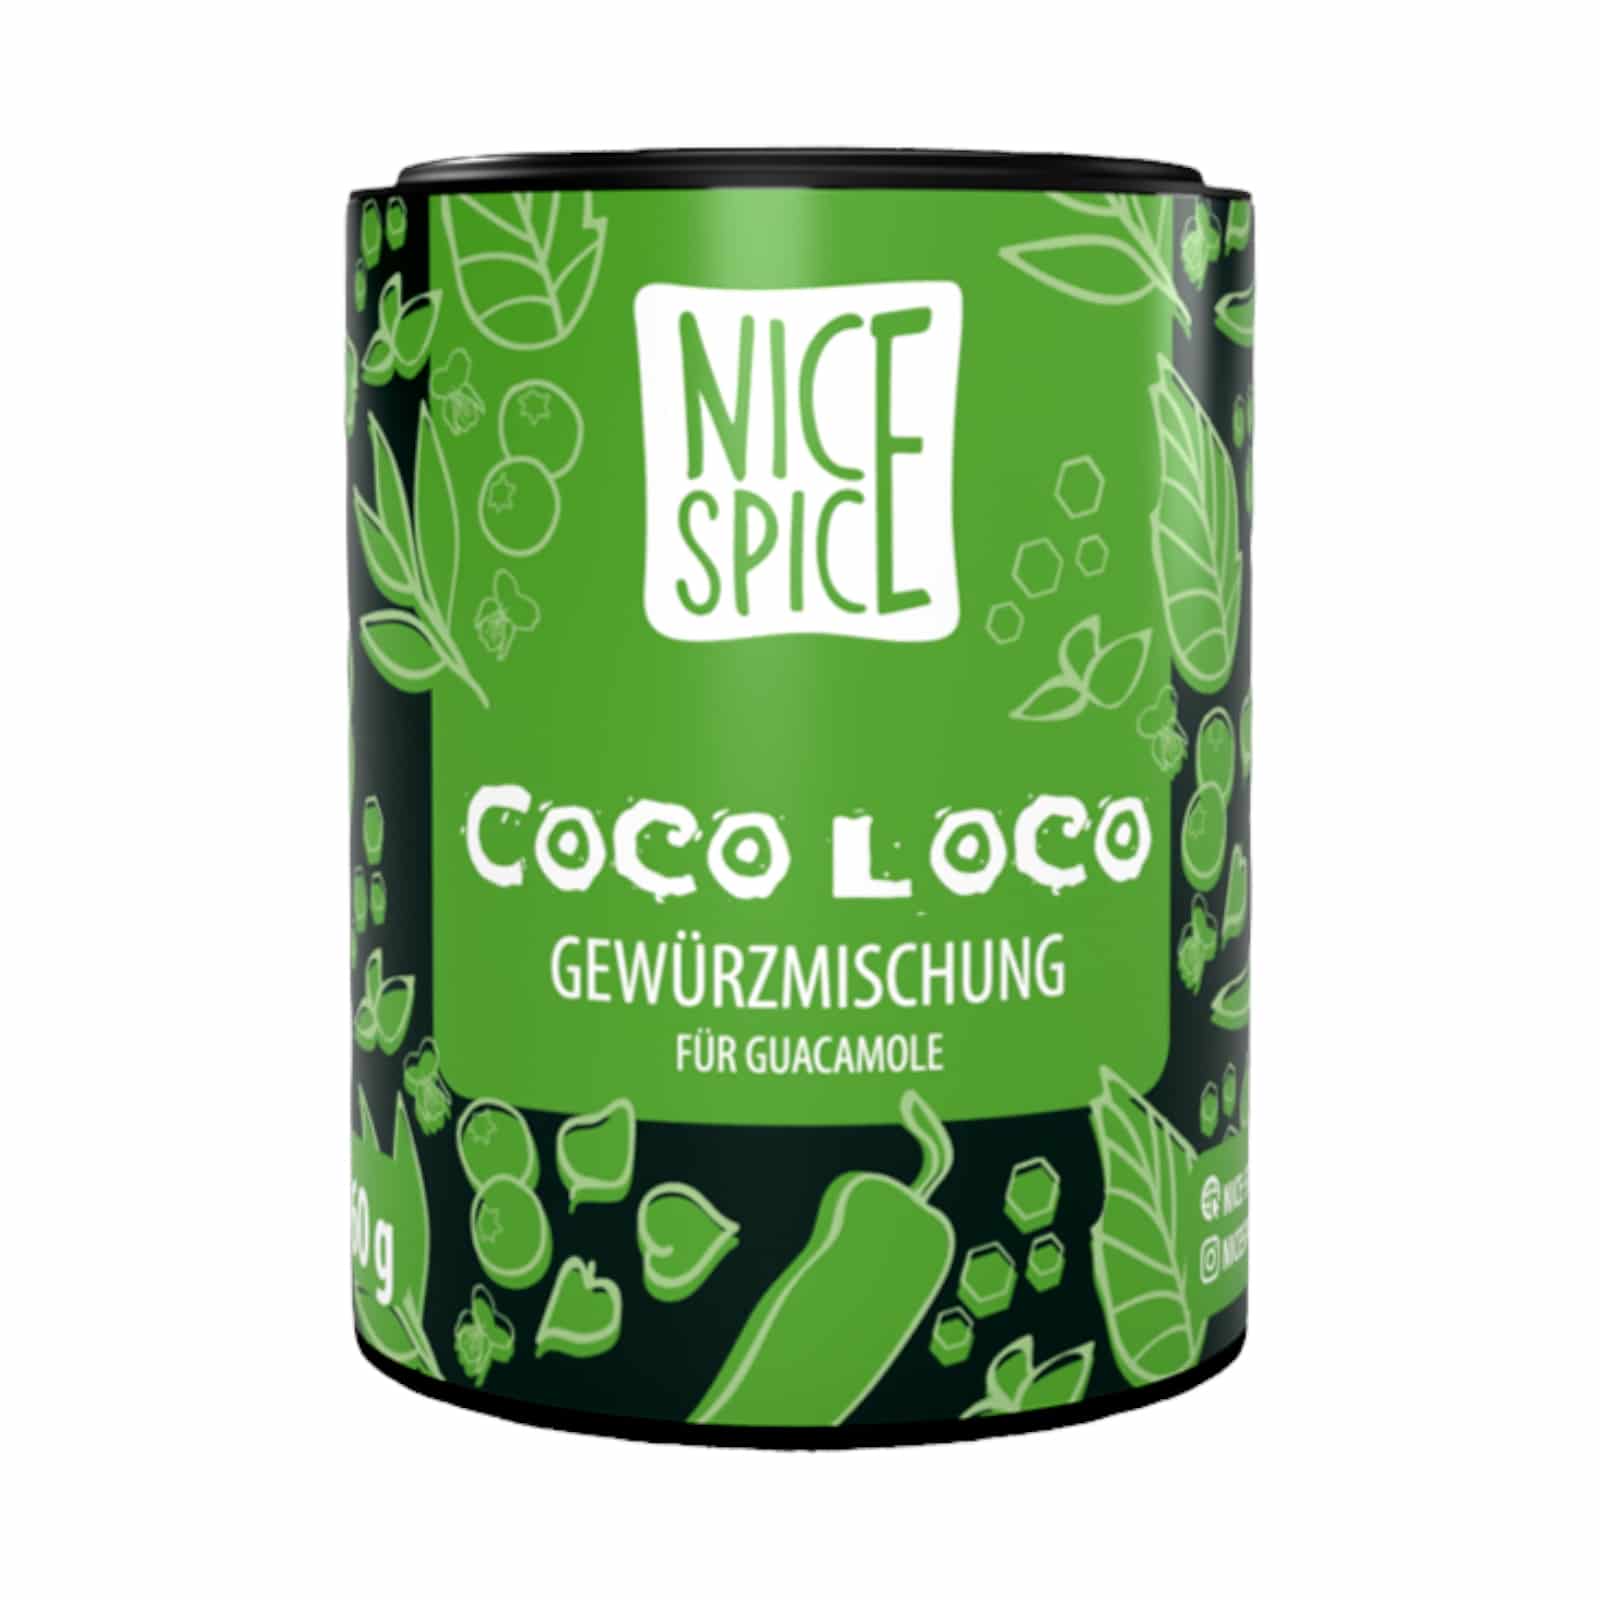 NICE SPICE Guacamole-Gewürz 60g PWDS